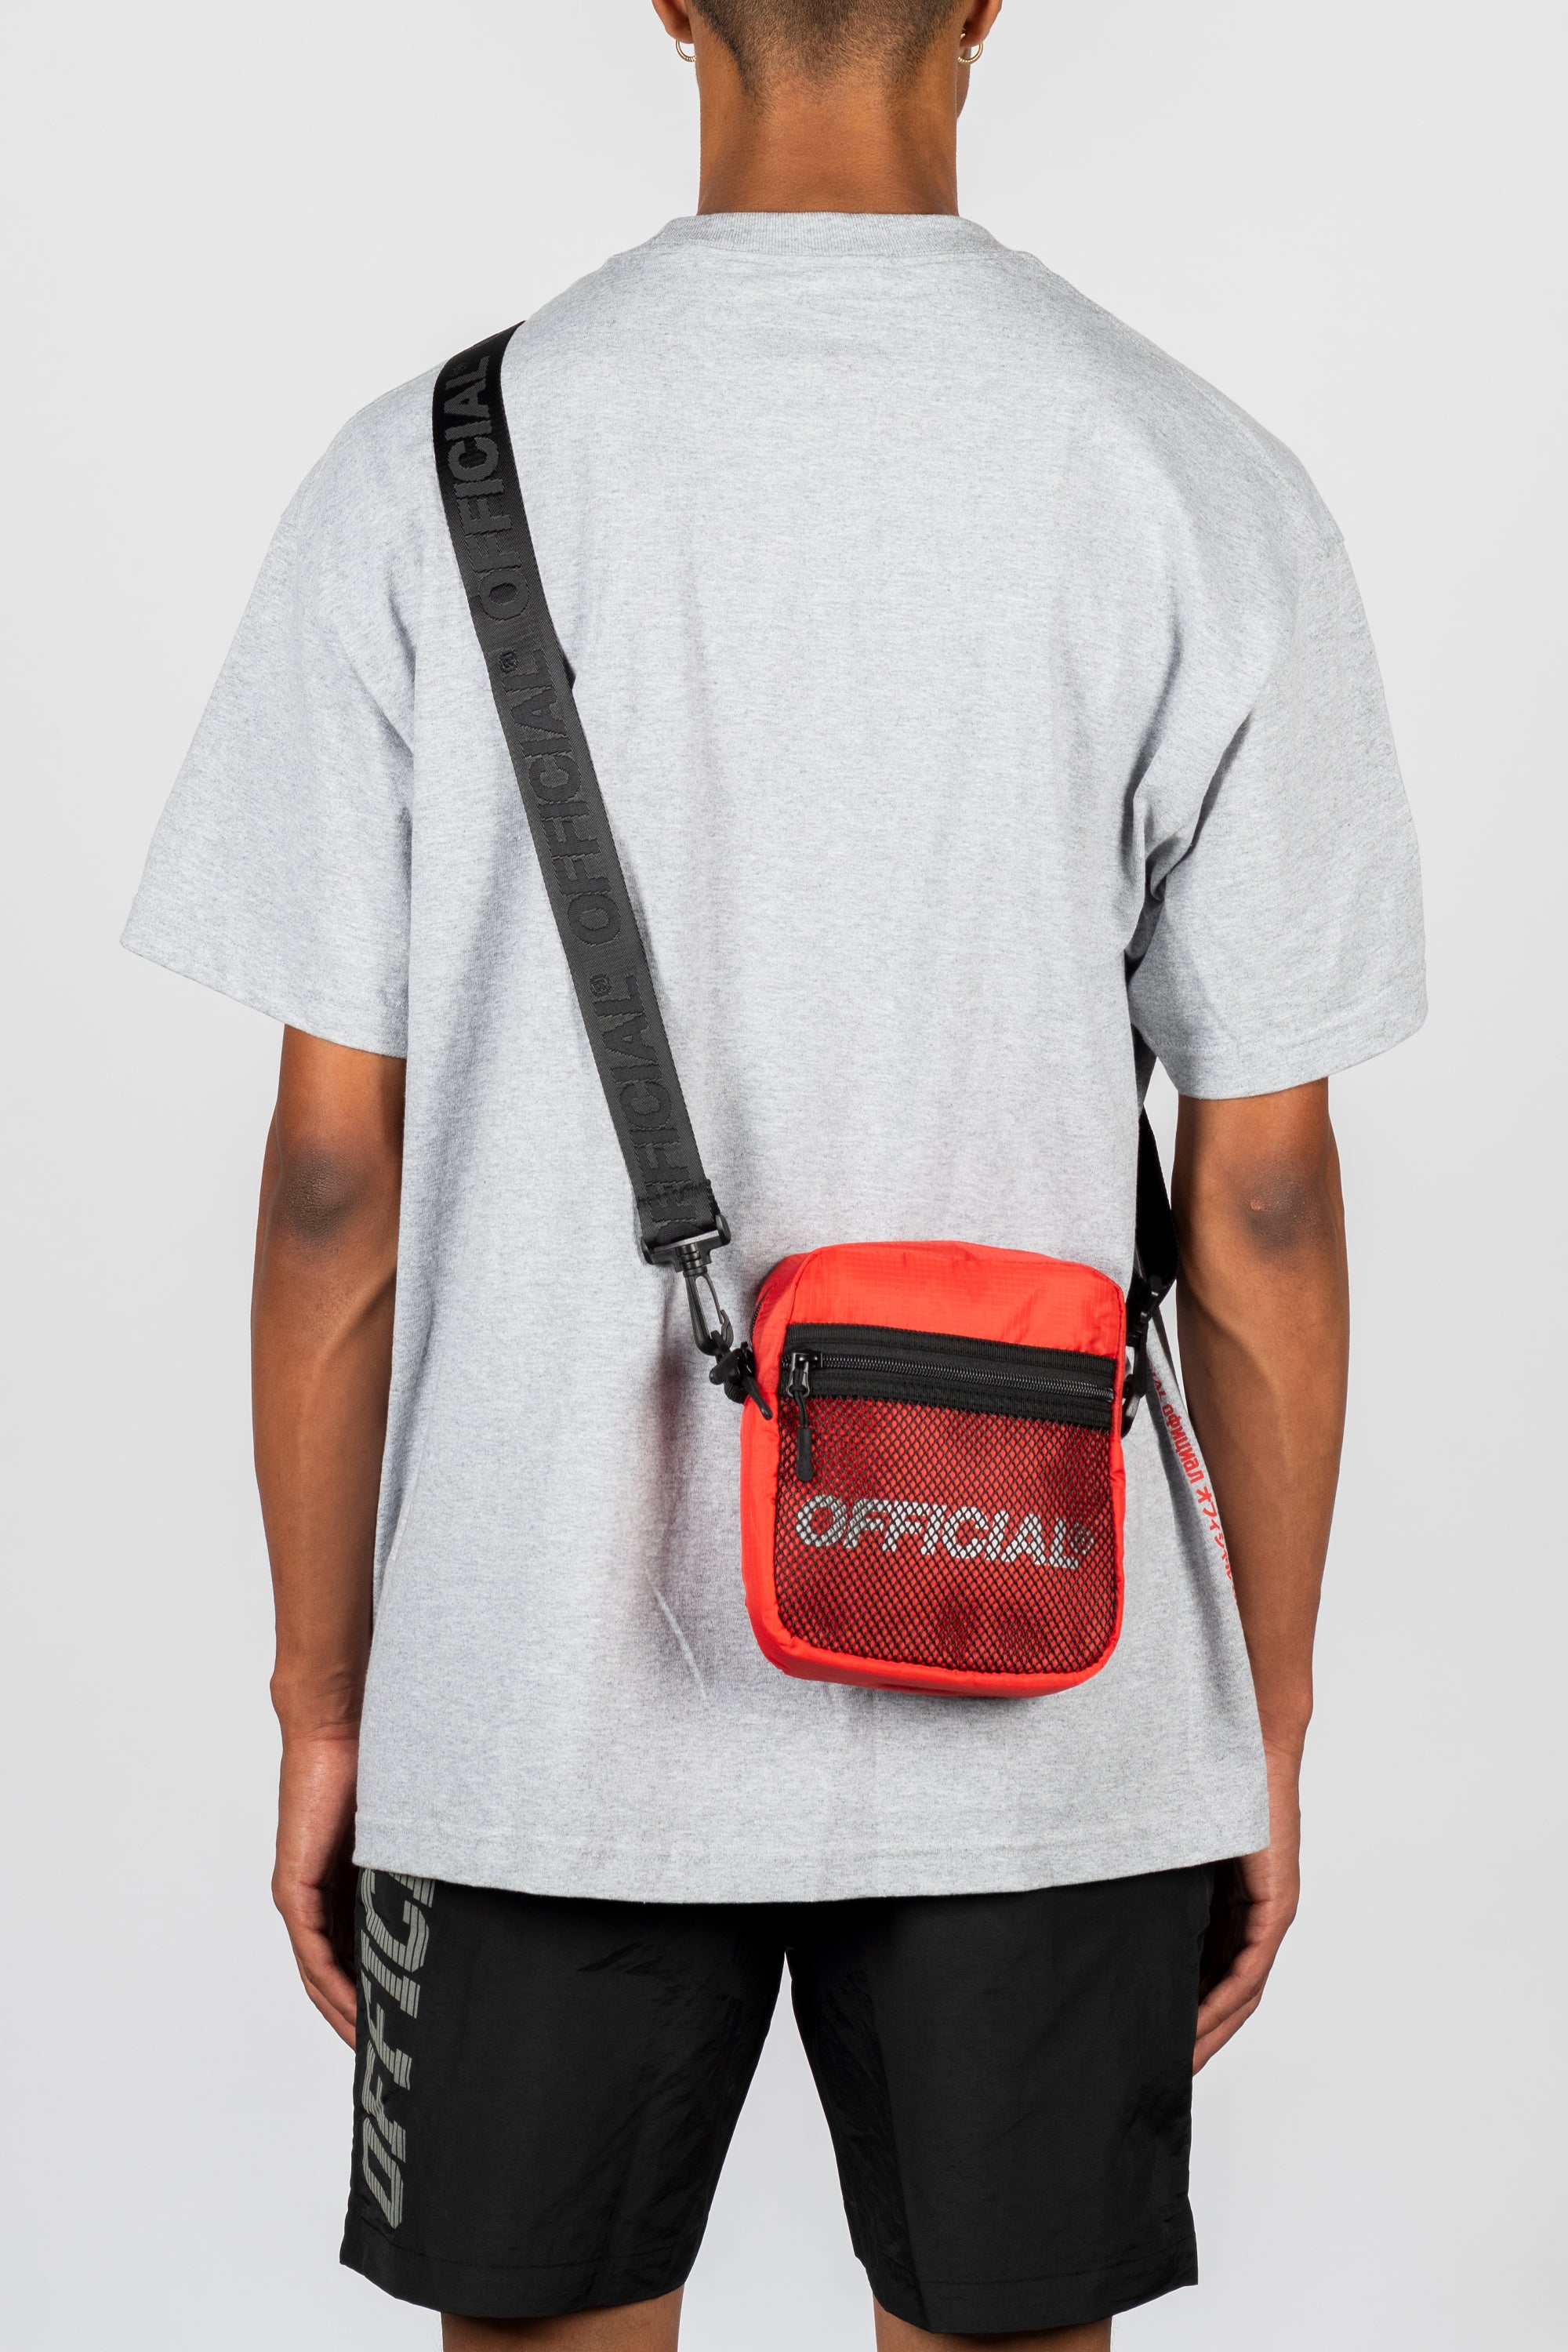 Melrose 2.0 Shoulder Bag (Red)